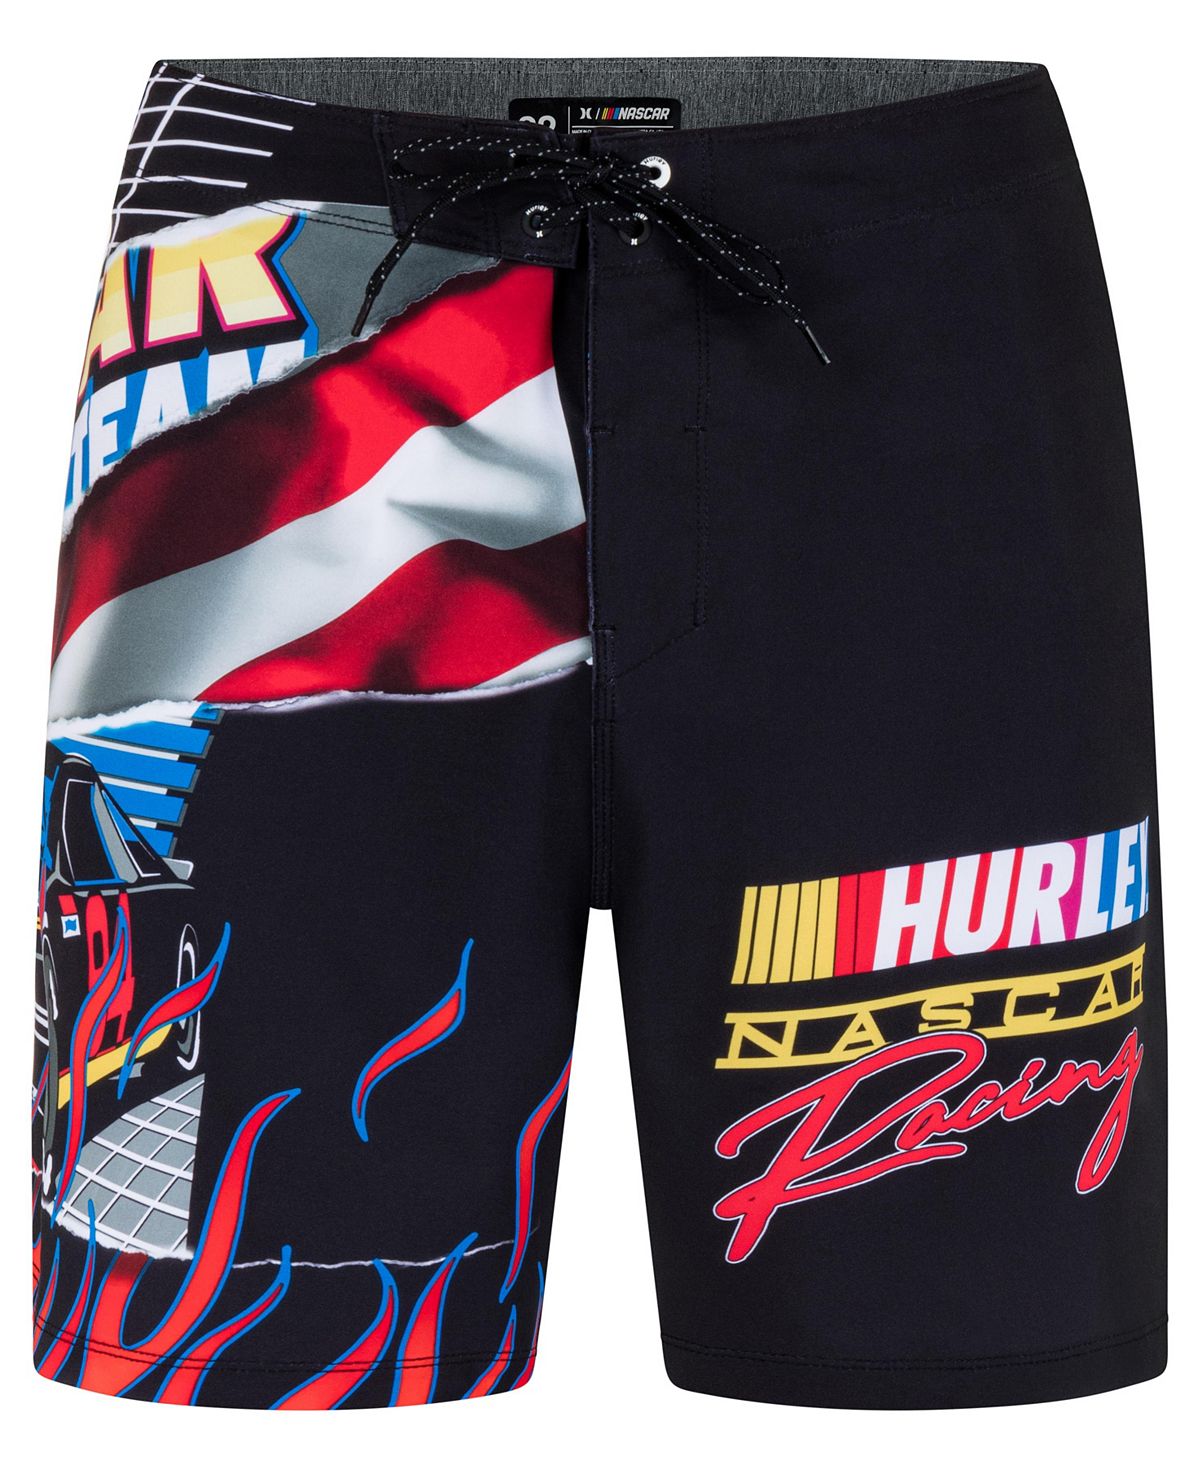 Мужские шорты для досок Phantom Nascar Racing 20 дюймов на шнурке Hurley